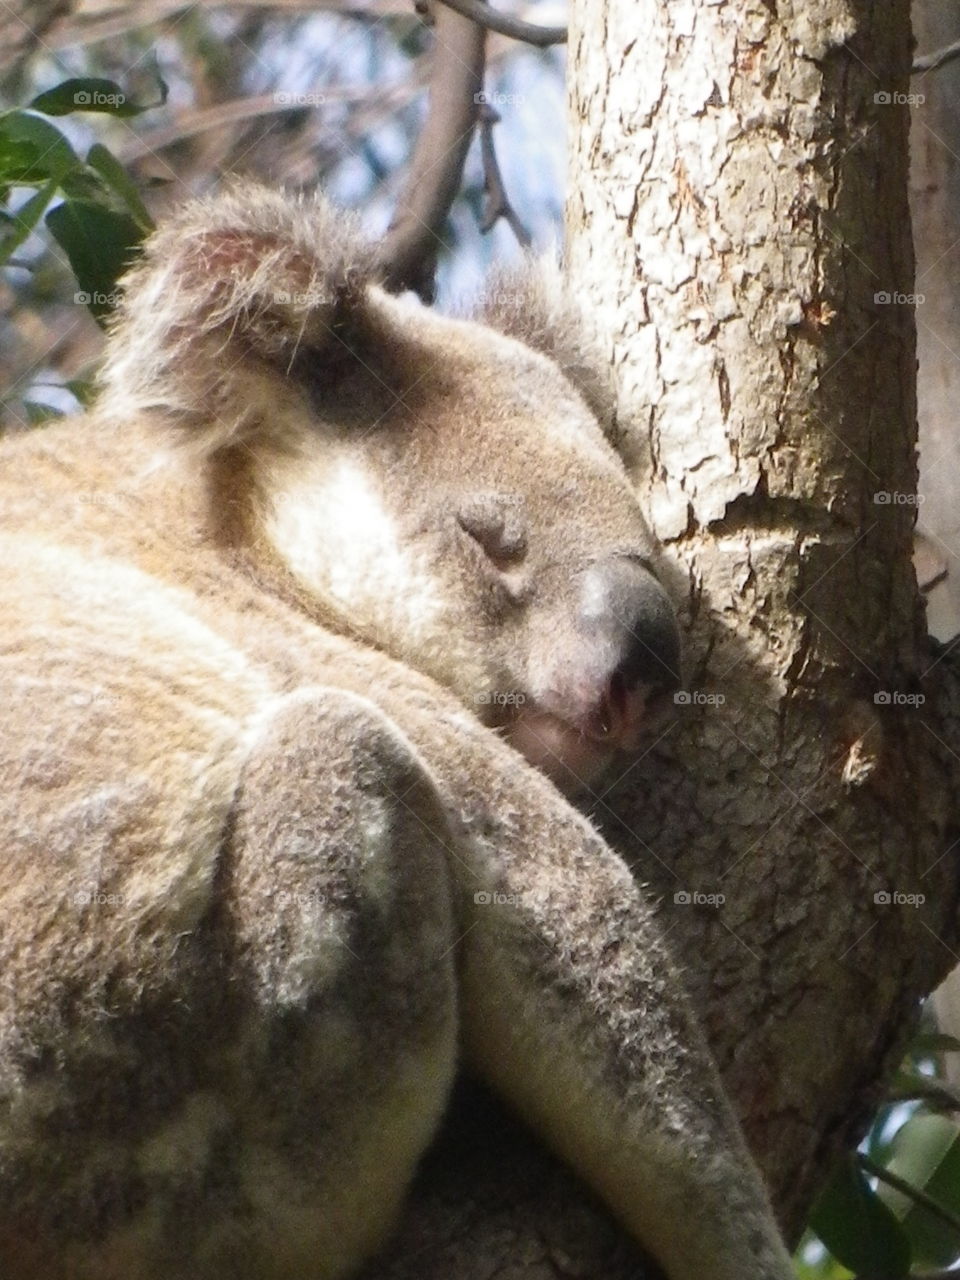 Cute cuddly Koala bear in a tree